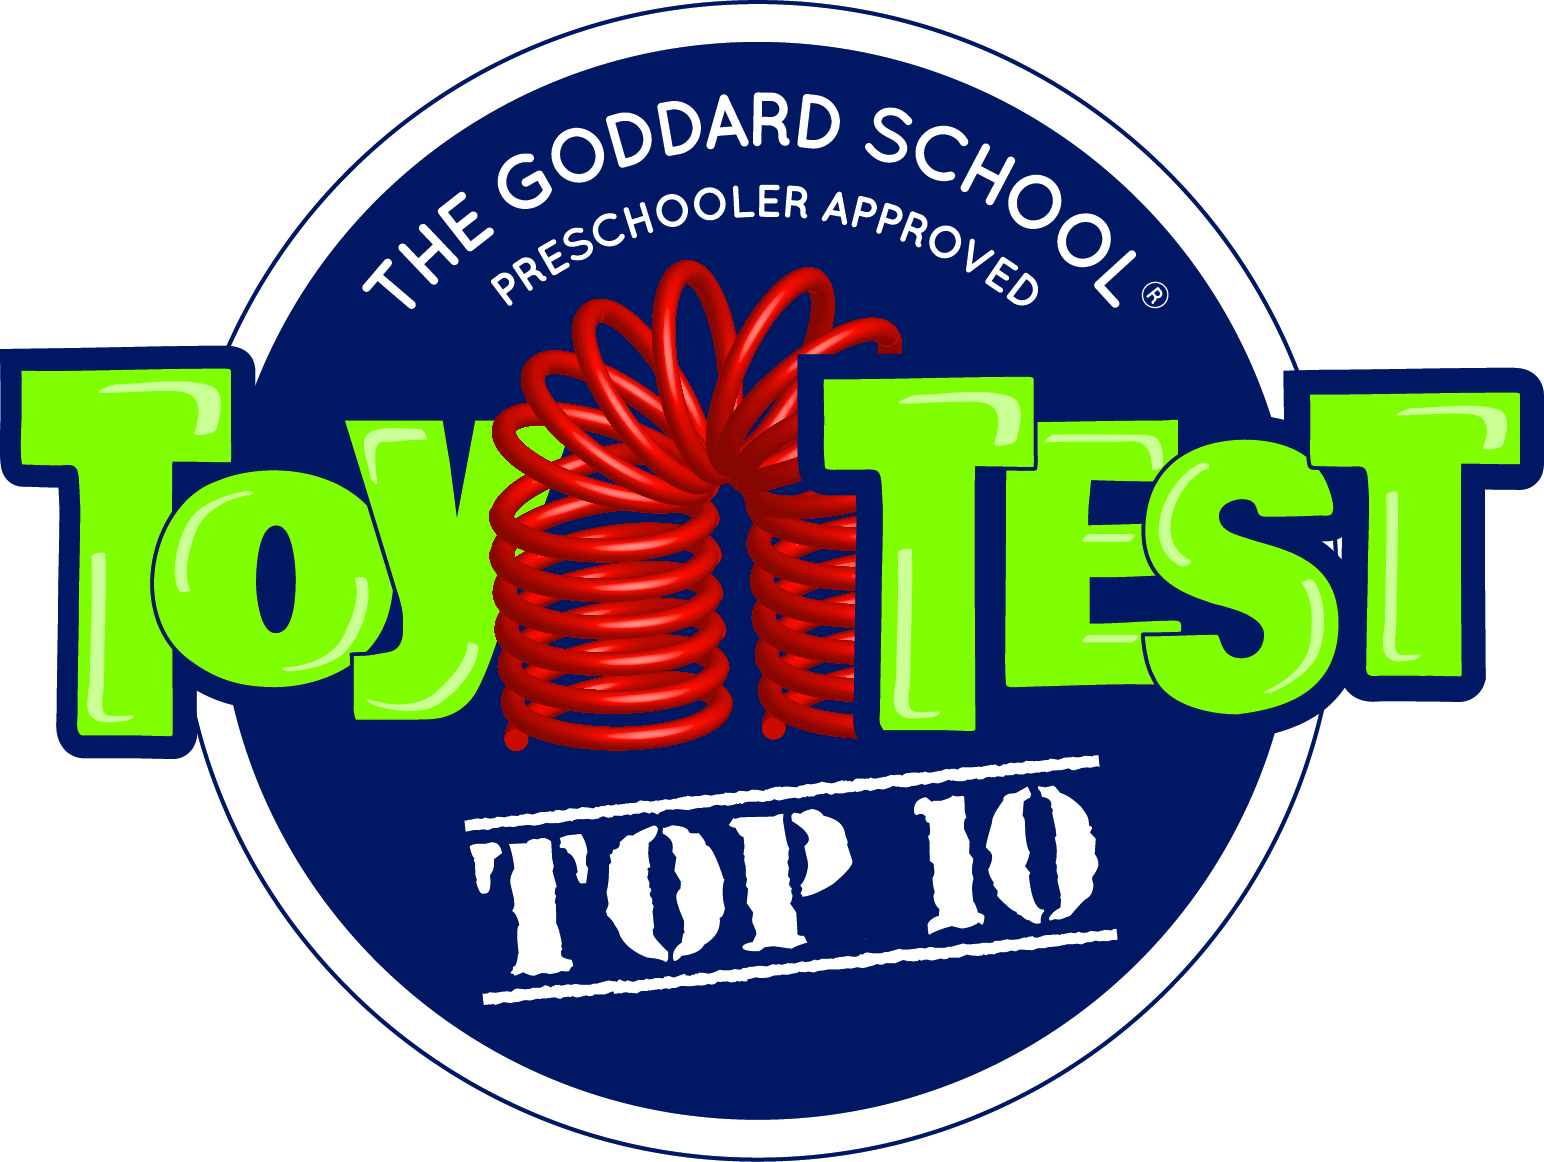 Top 10 Winner in The Goddard School Preschooler